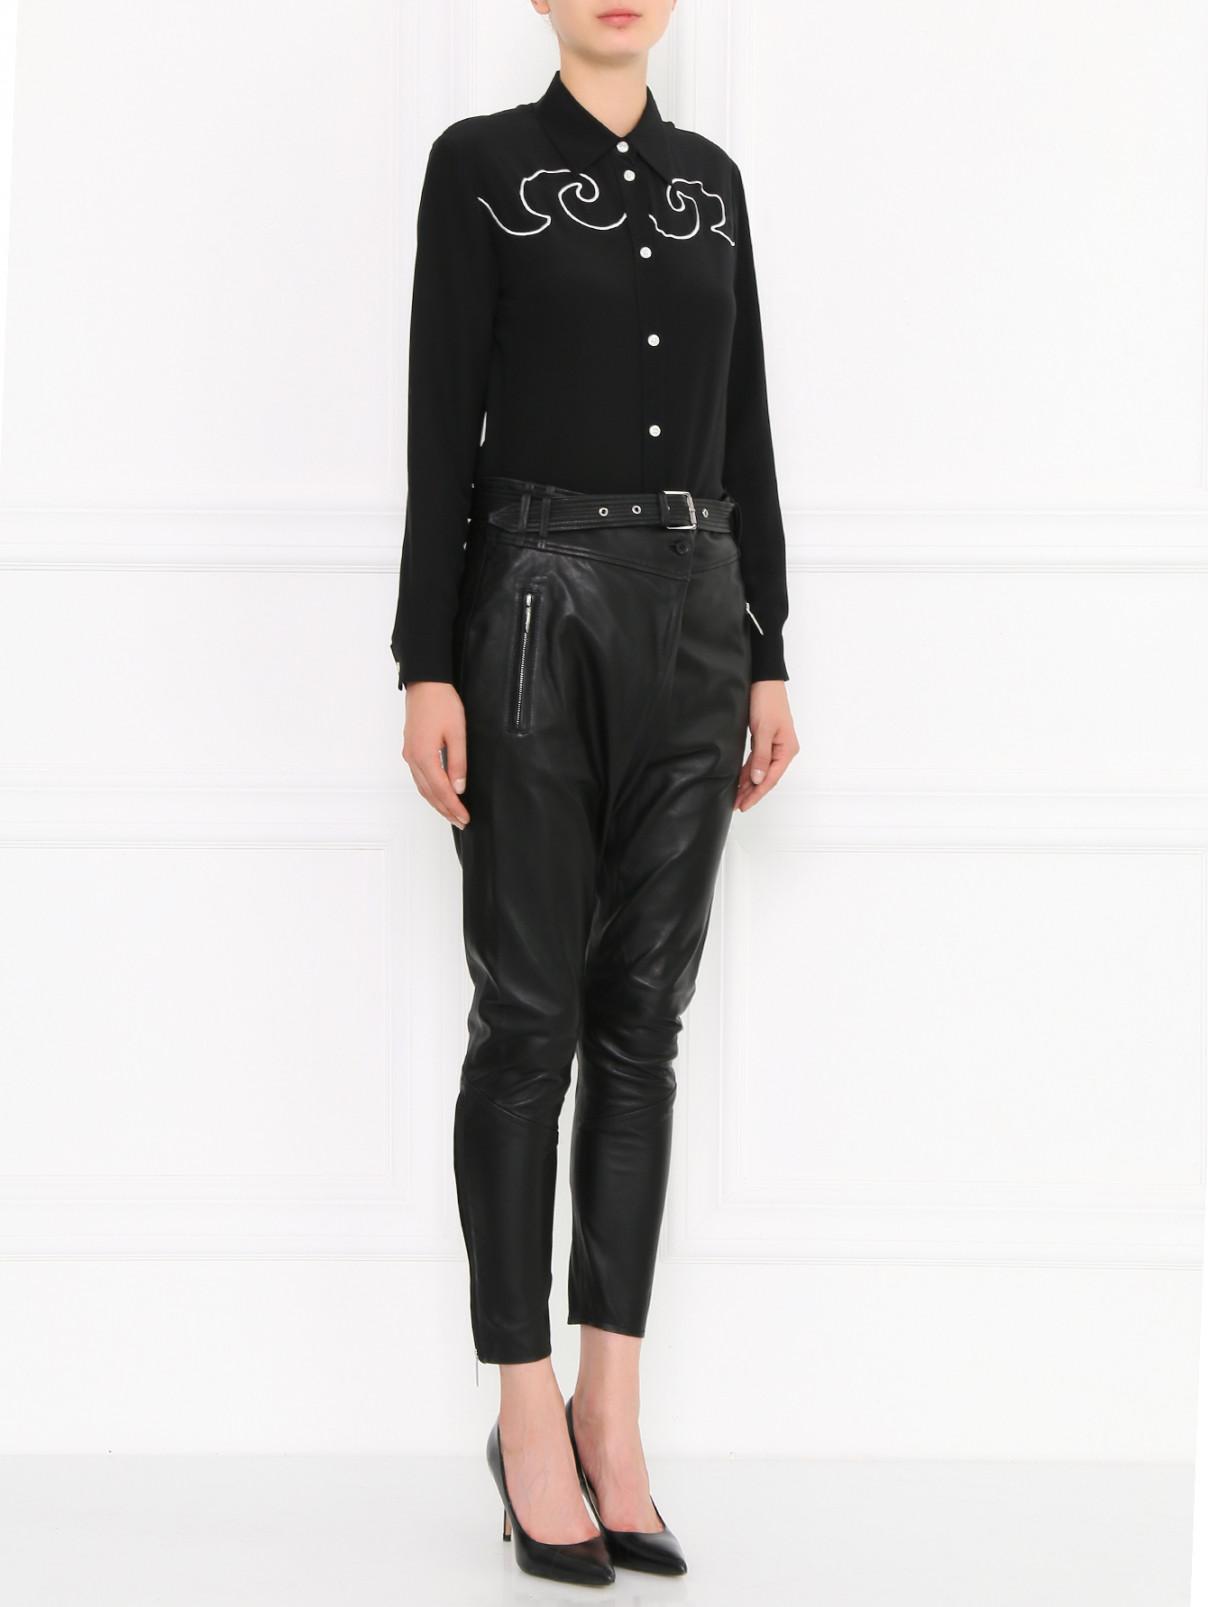 Кожаные брюки с низкой посадкой Barbara Bui  –  Модель Общий вид  – Цвет:  Черный